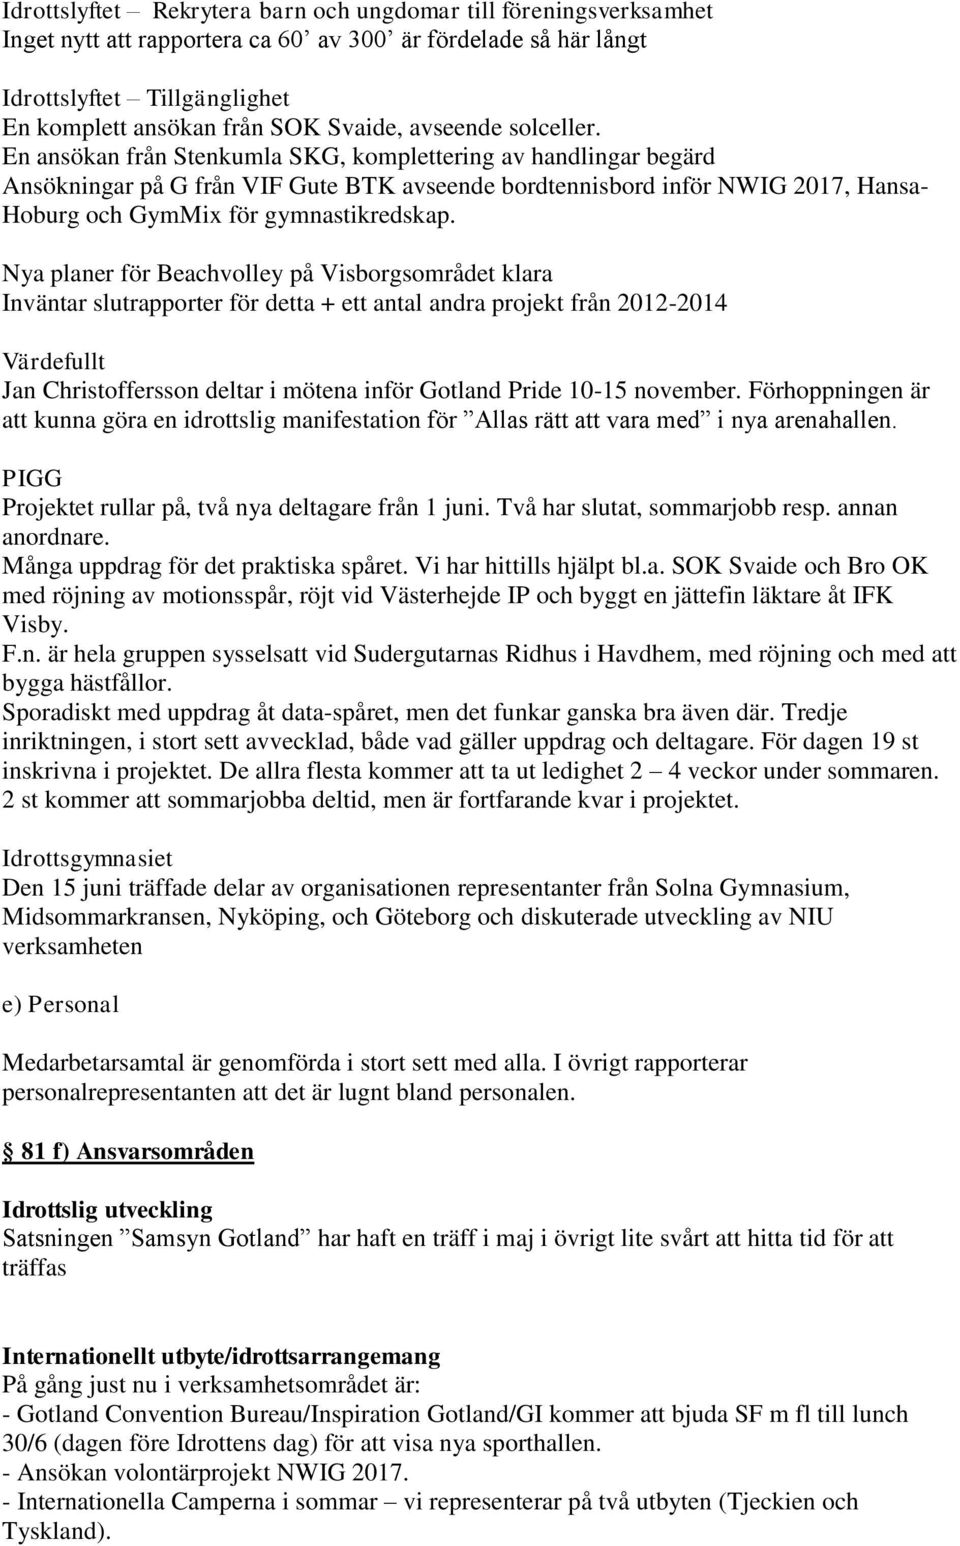 En ansökan från Stenkumla SKG, komplettering av handlingar begärd Ansökningar på G från VIF Gute BTK avseende bordtennisbord inför NWIG 2017, Hansa- Hoburg och GymMix för gymnastikredskap.